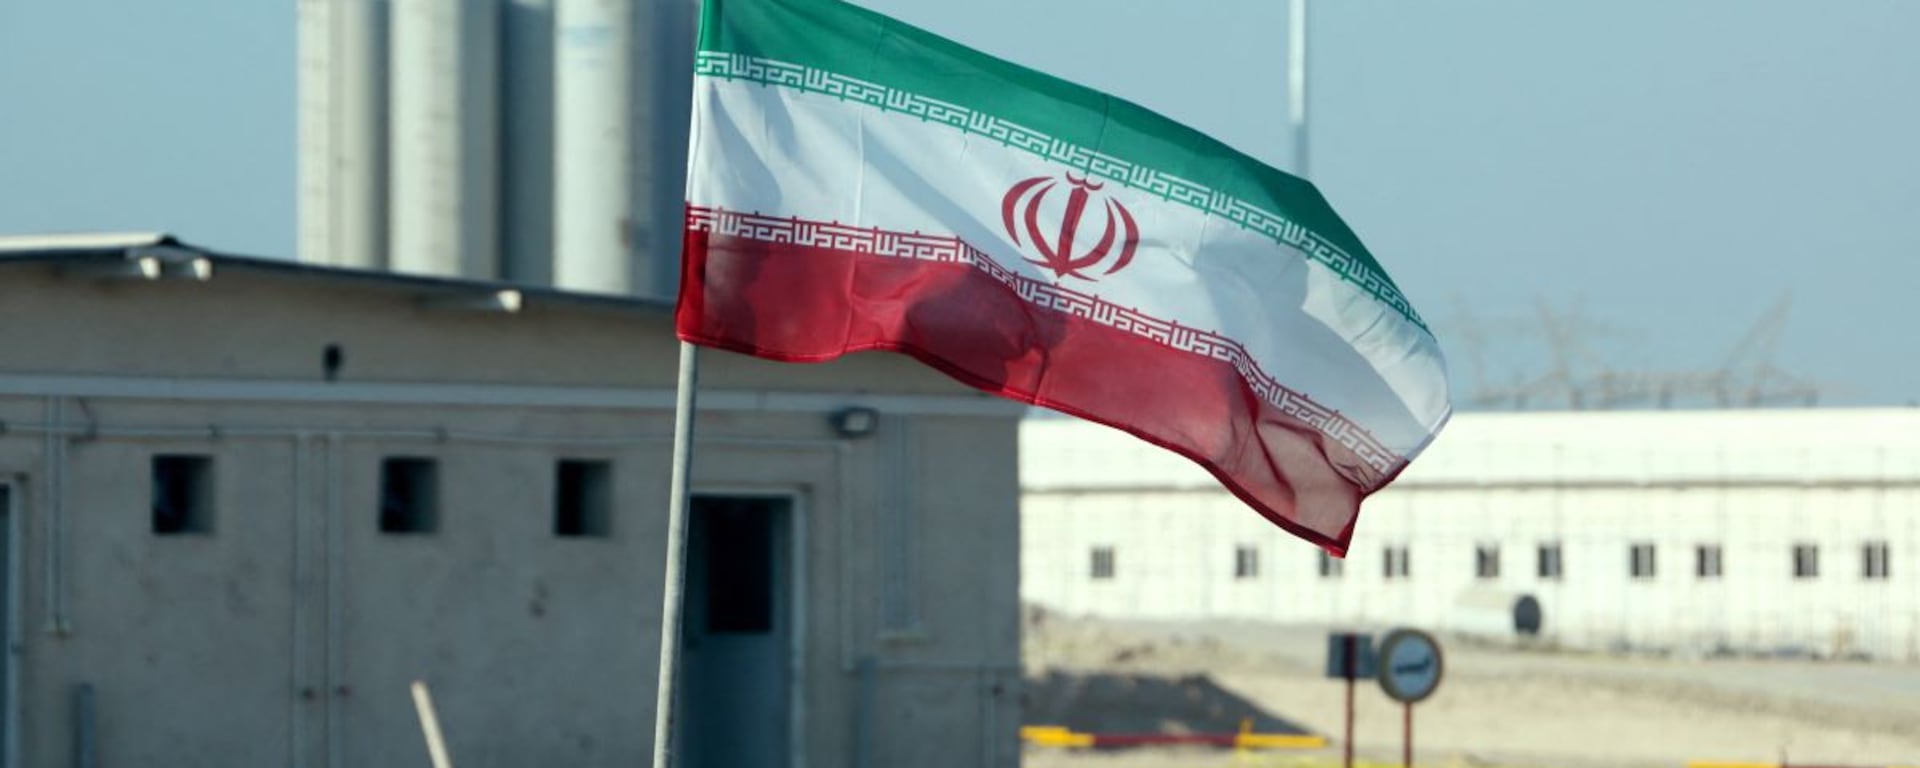 Qué hace tan peligroso al programa nuclear de Irán y por qué tres países europeos han encendido las alarmas